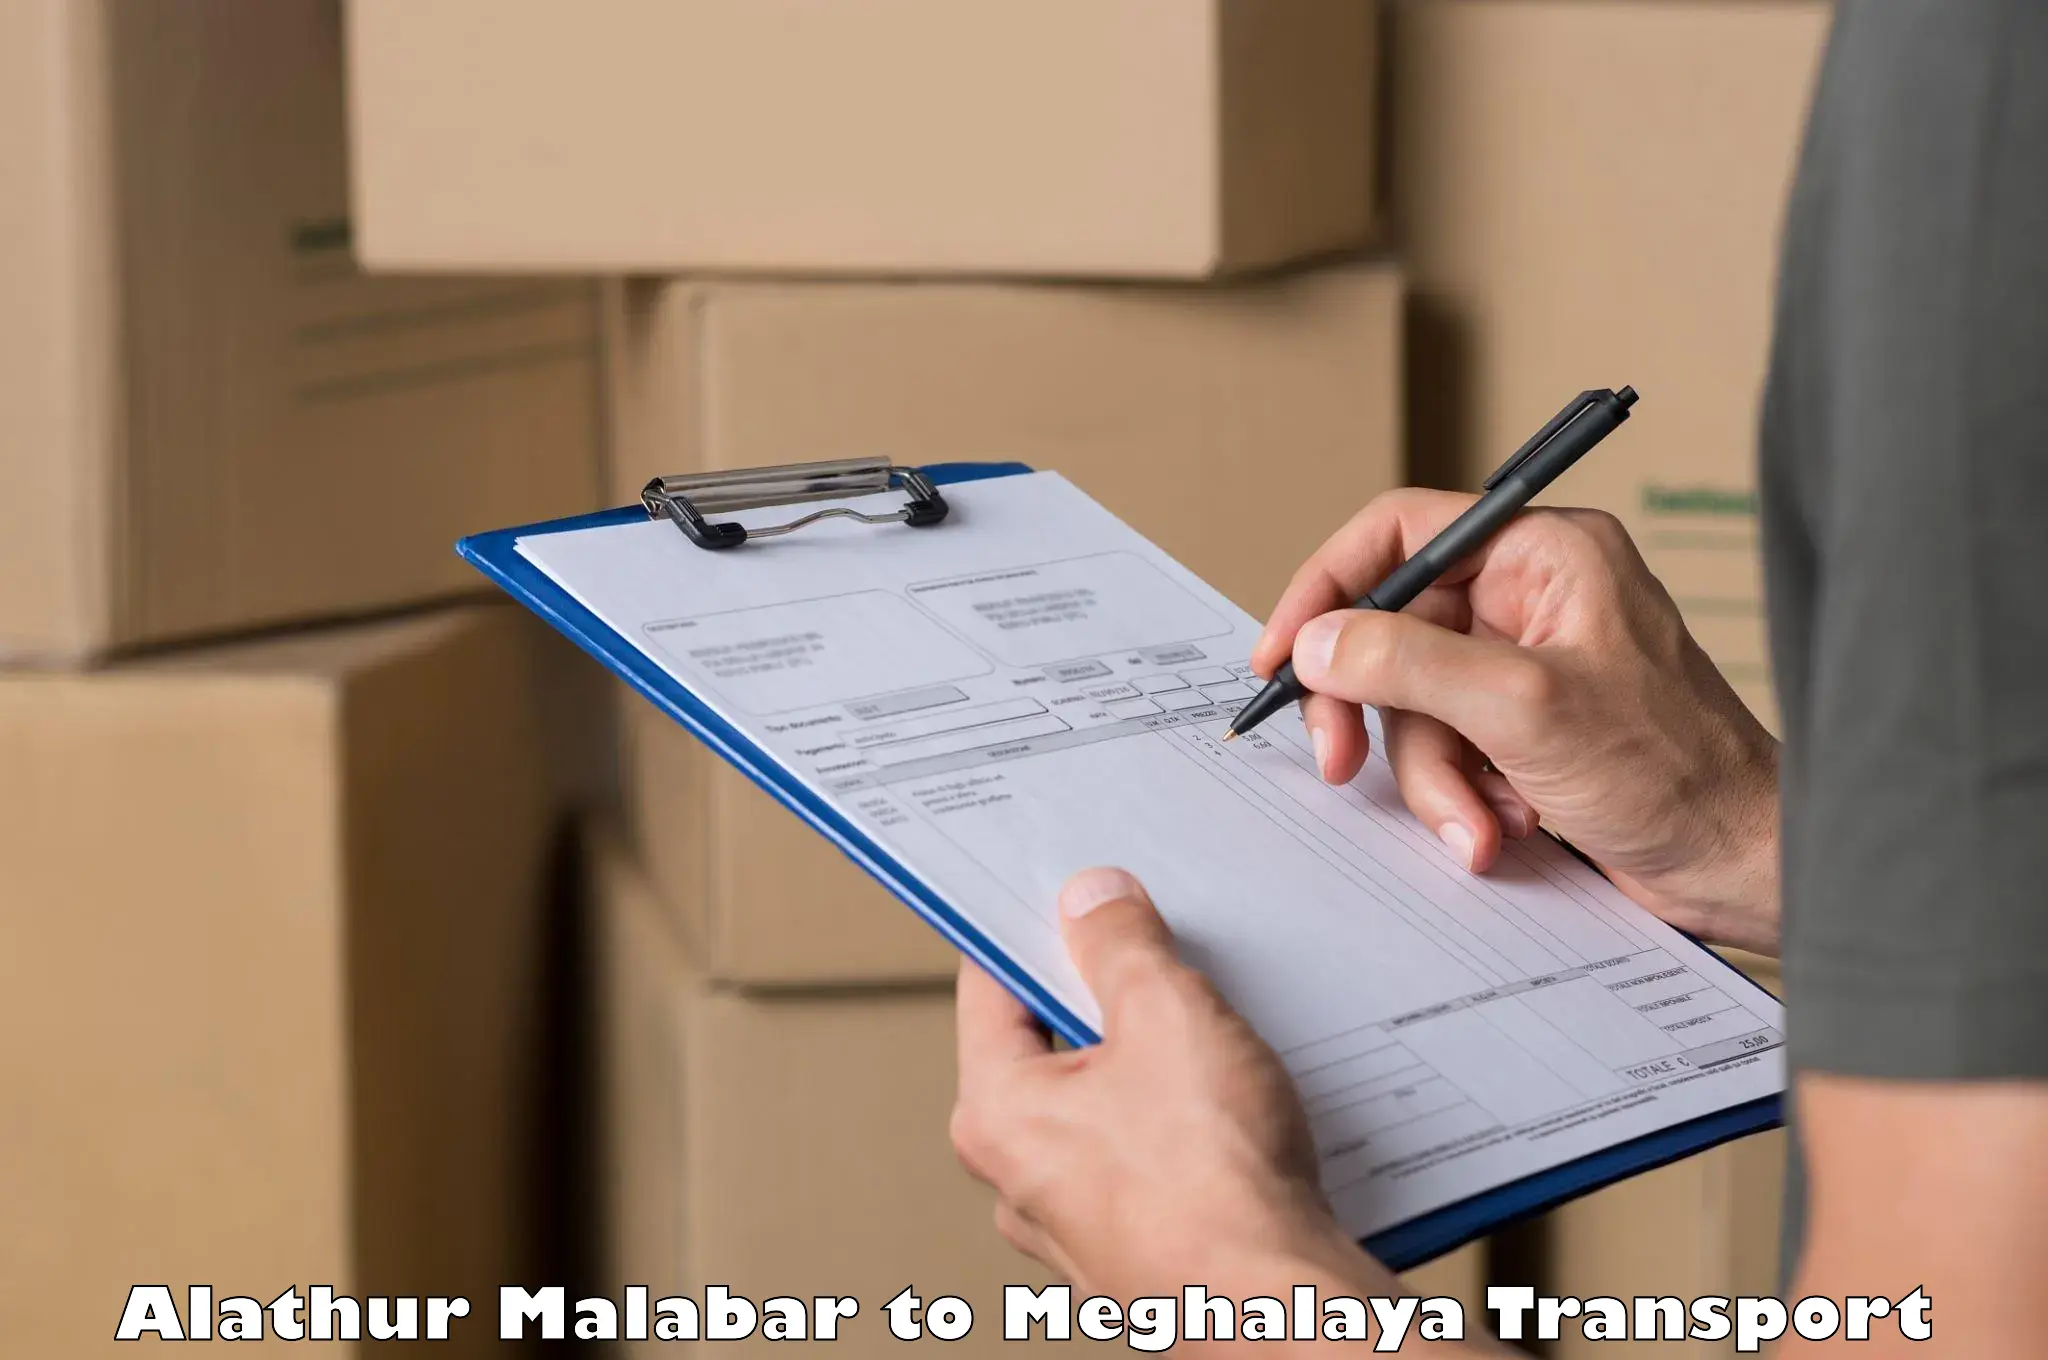 Material transport services Alathur Malabar to Meghalaya